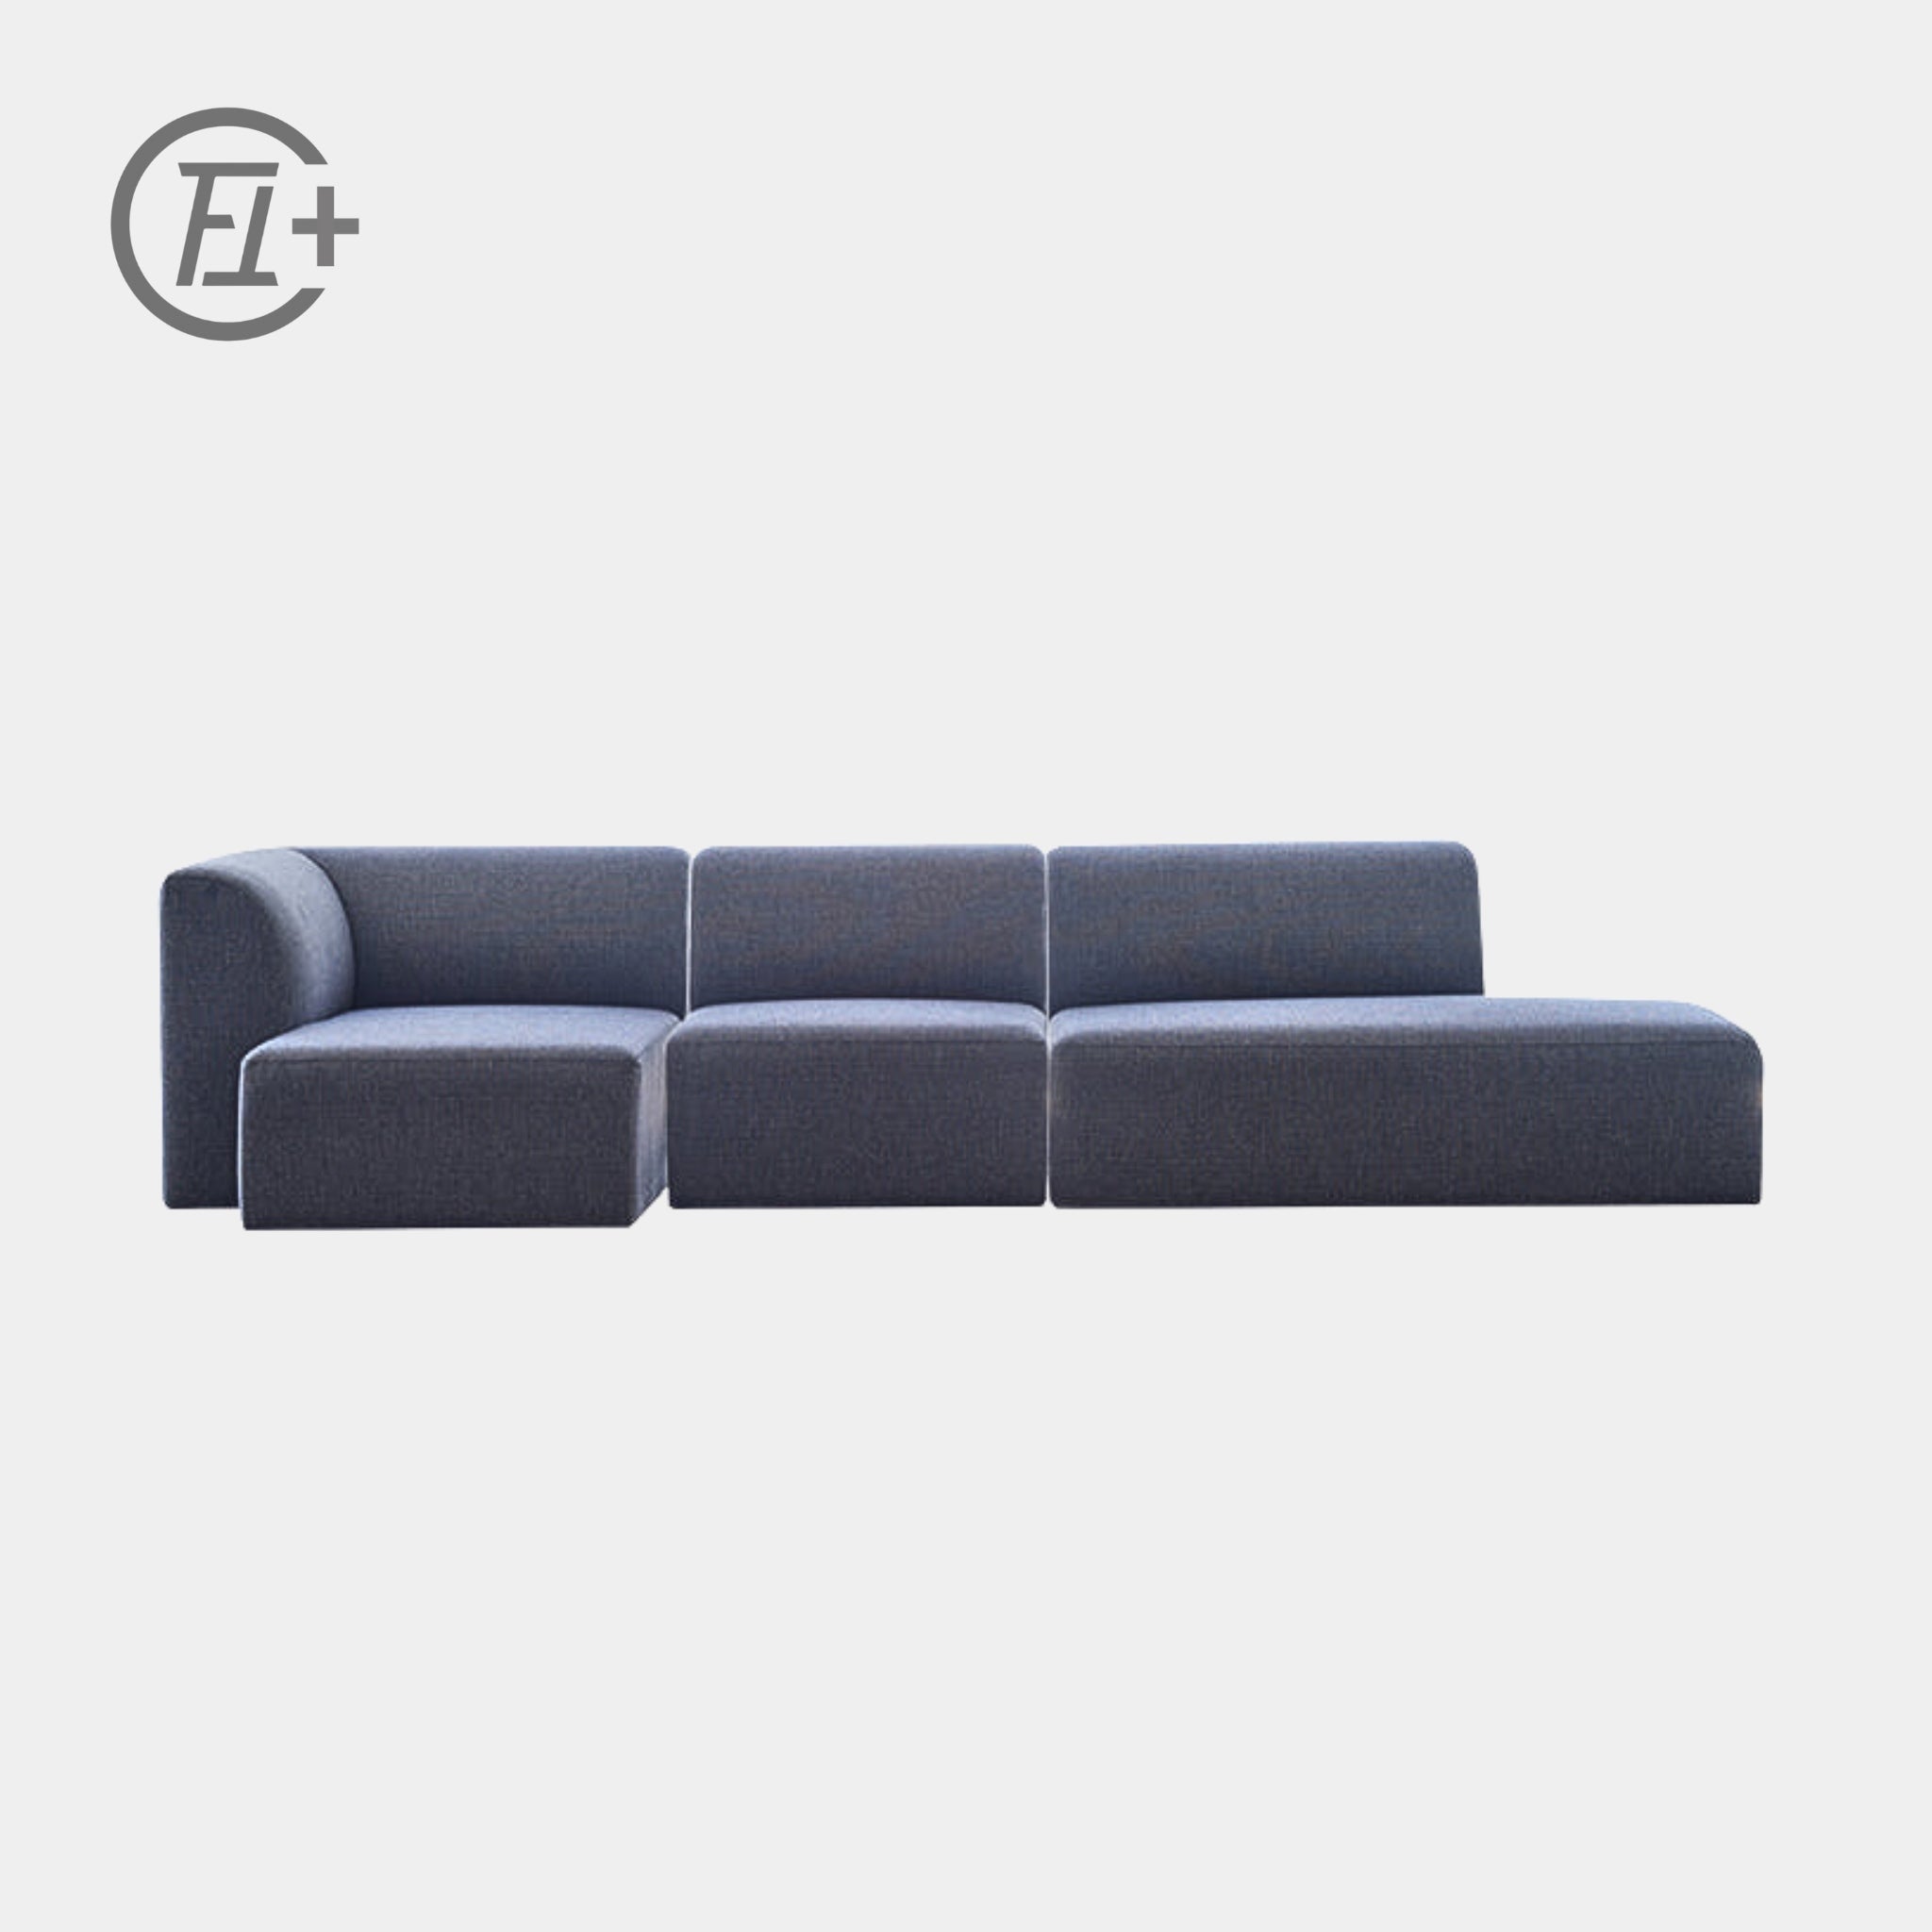 The Feelter Slab Modular Sofa